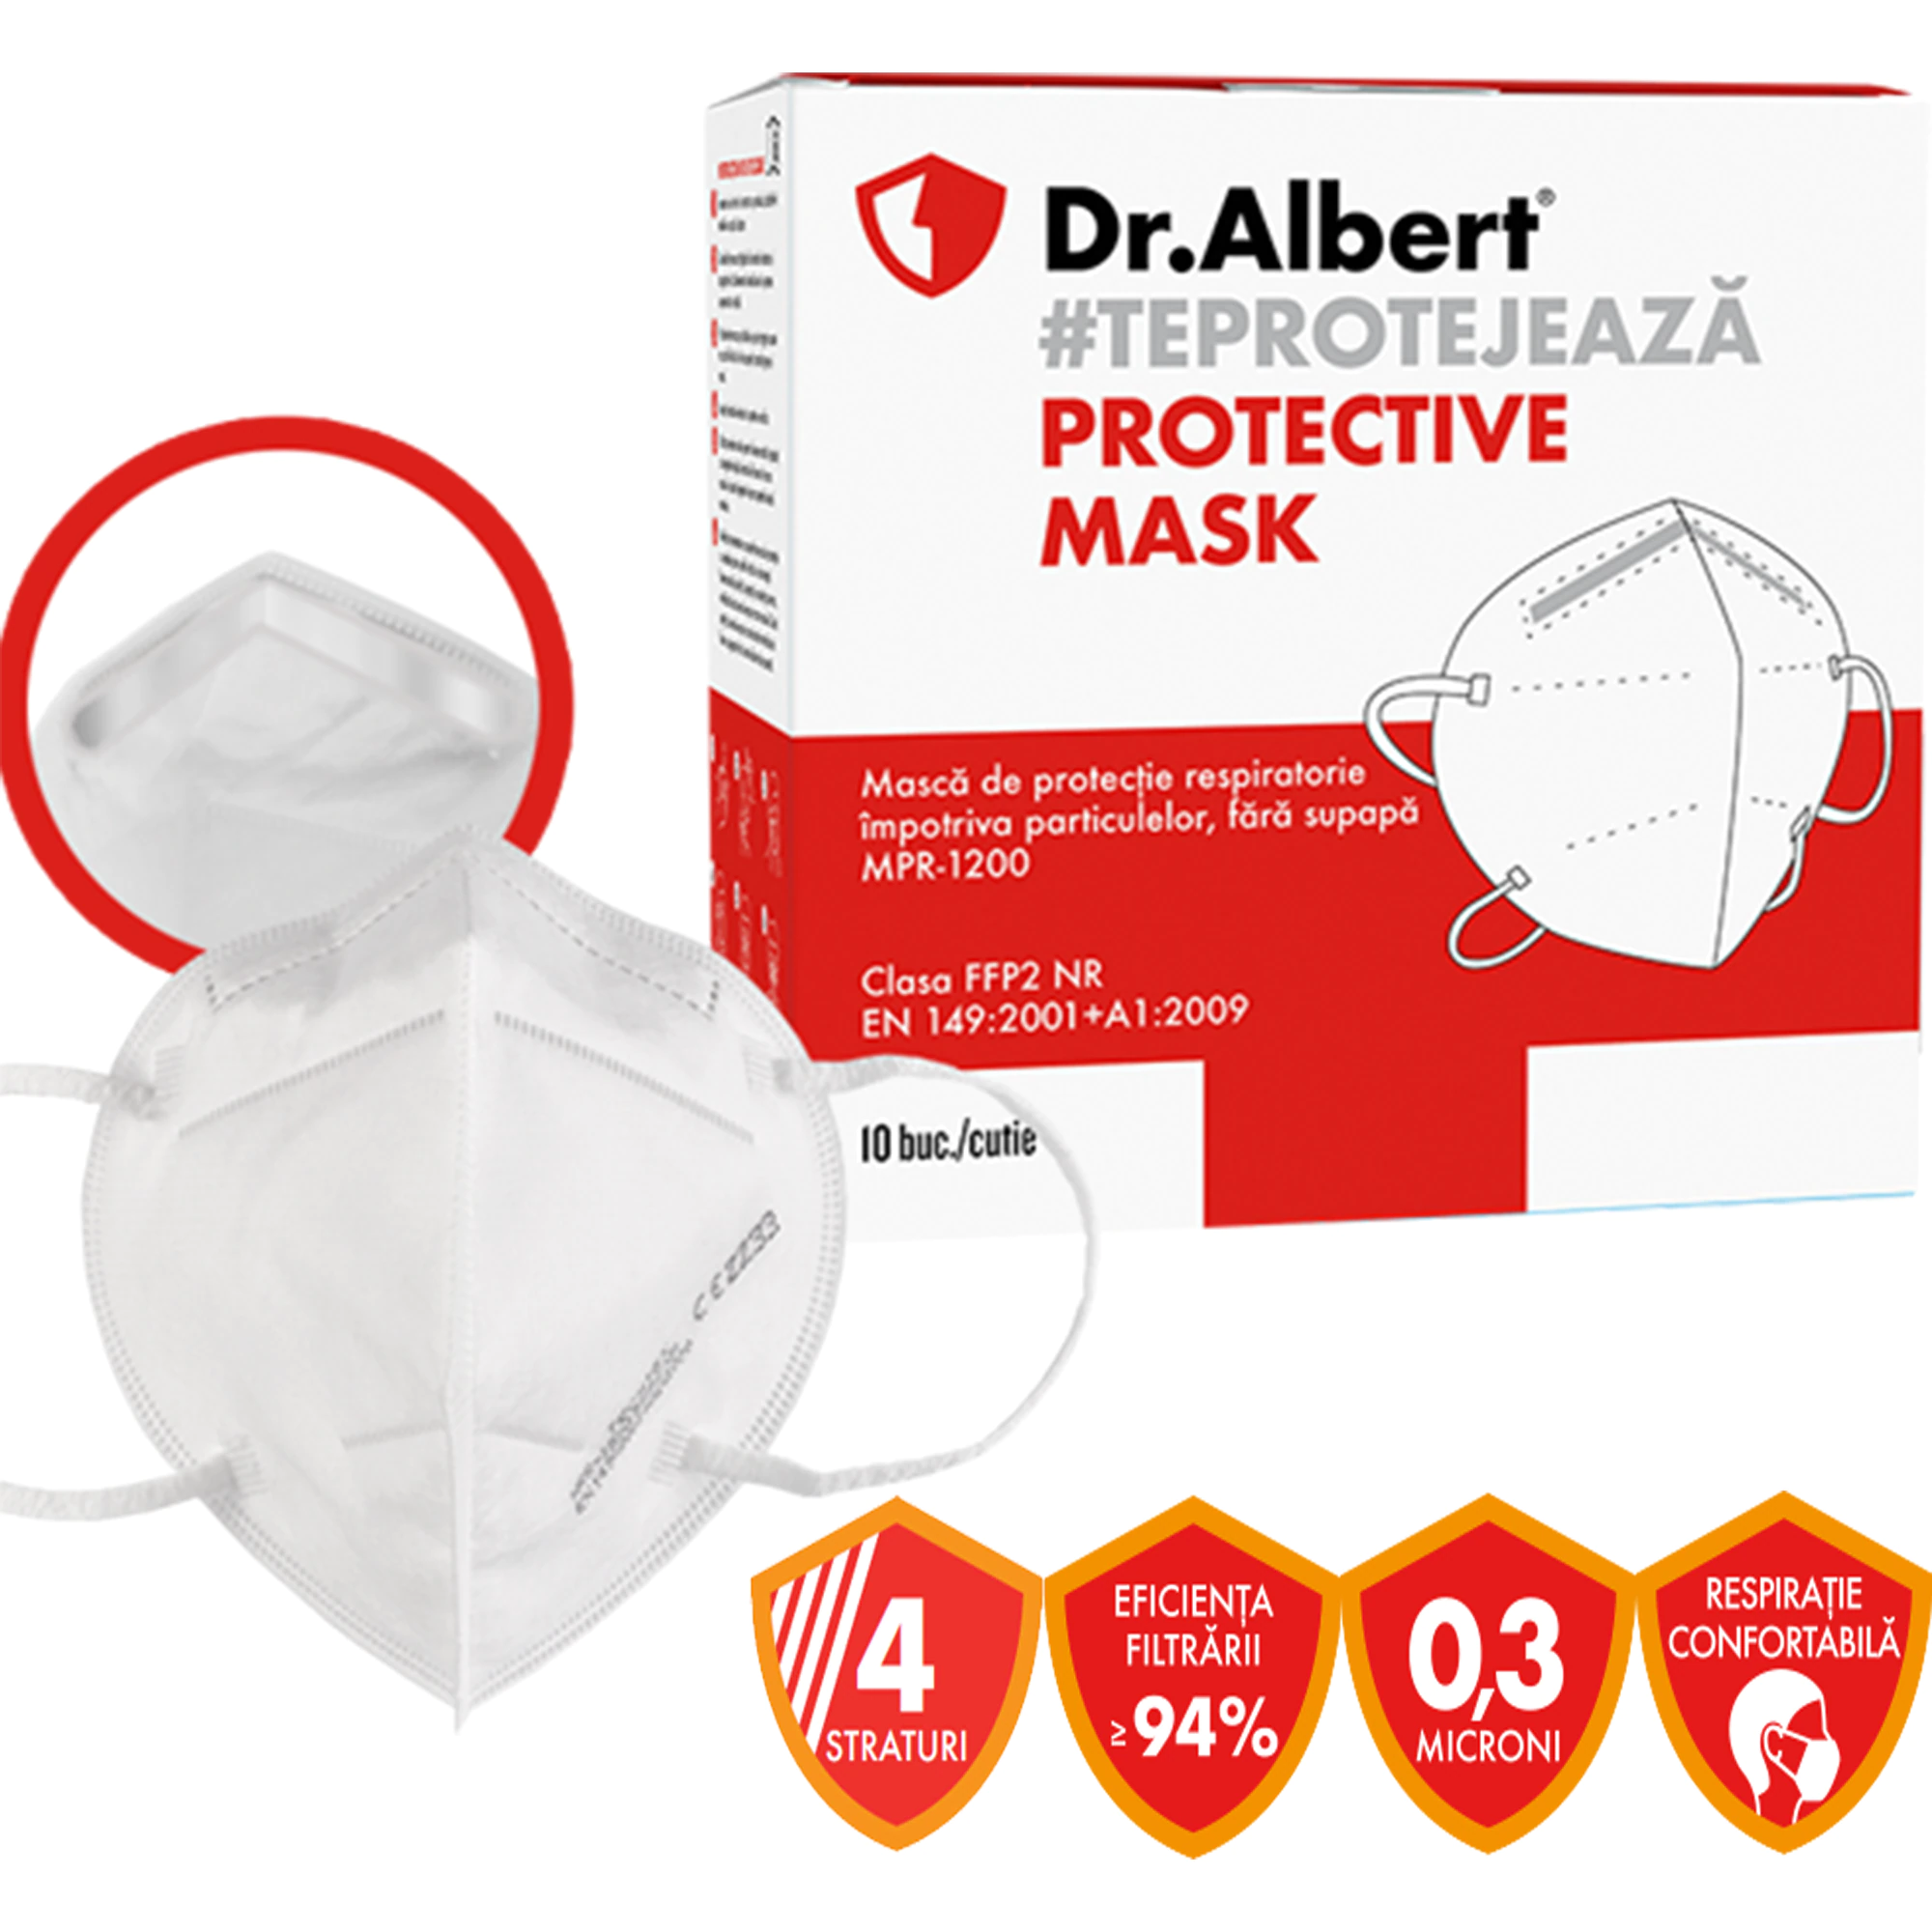 Masca de protectie respiratorie FFP2 Dr. Albert, fara supapa, MPR-1200 [1]